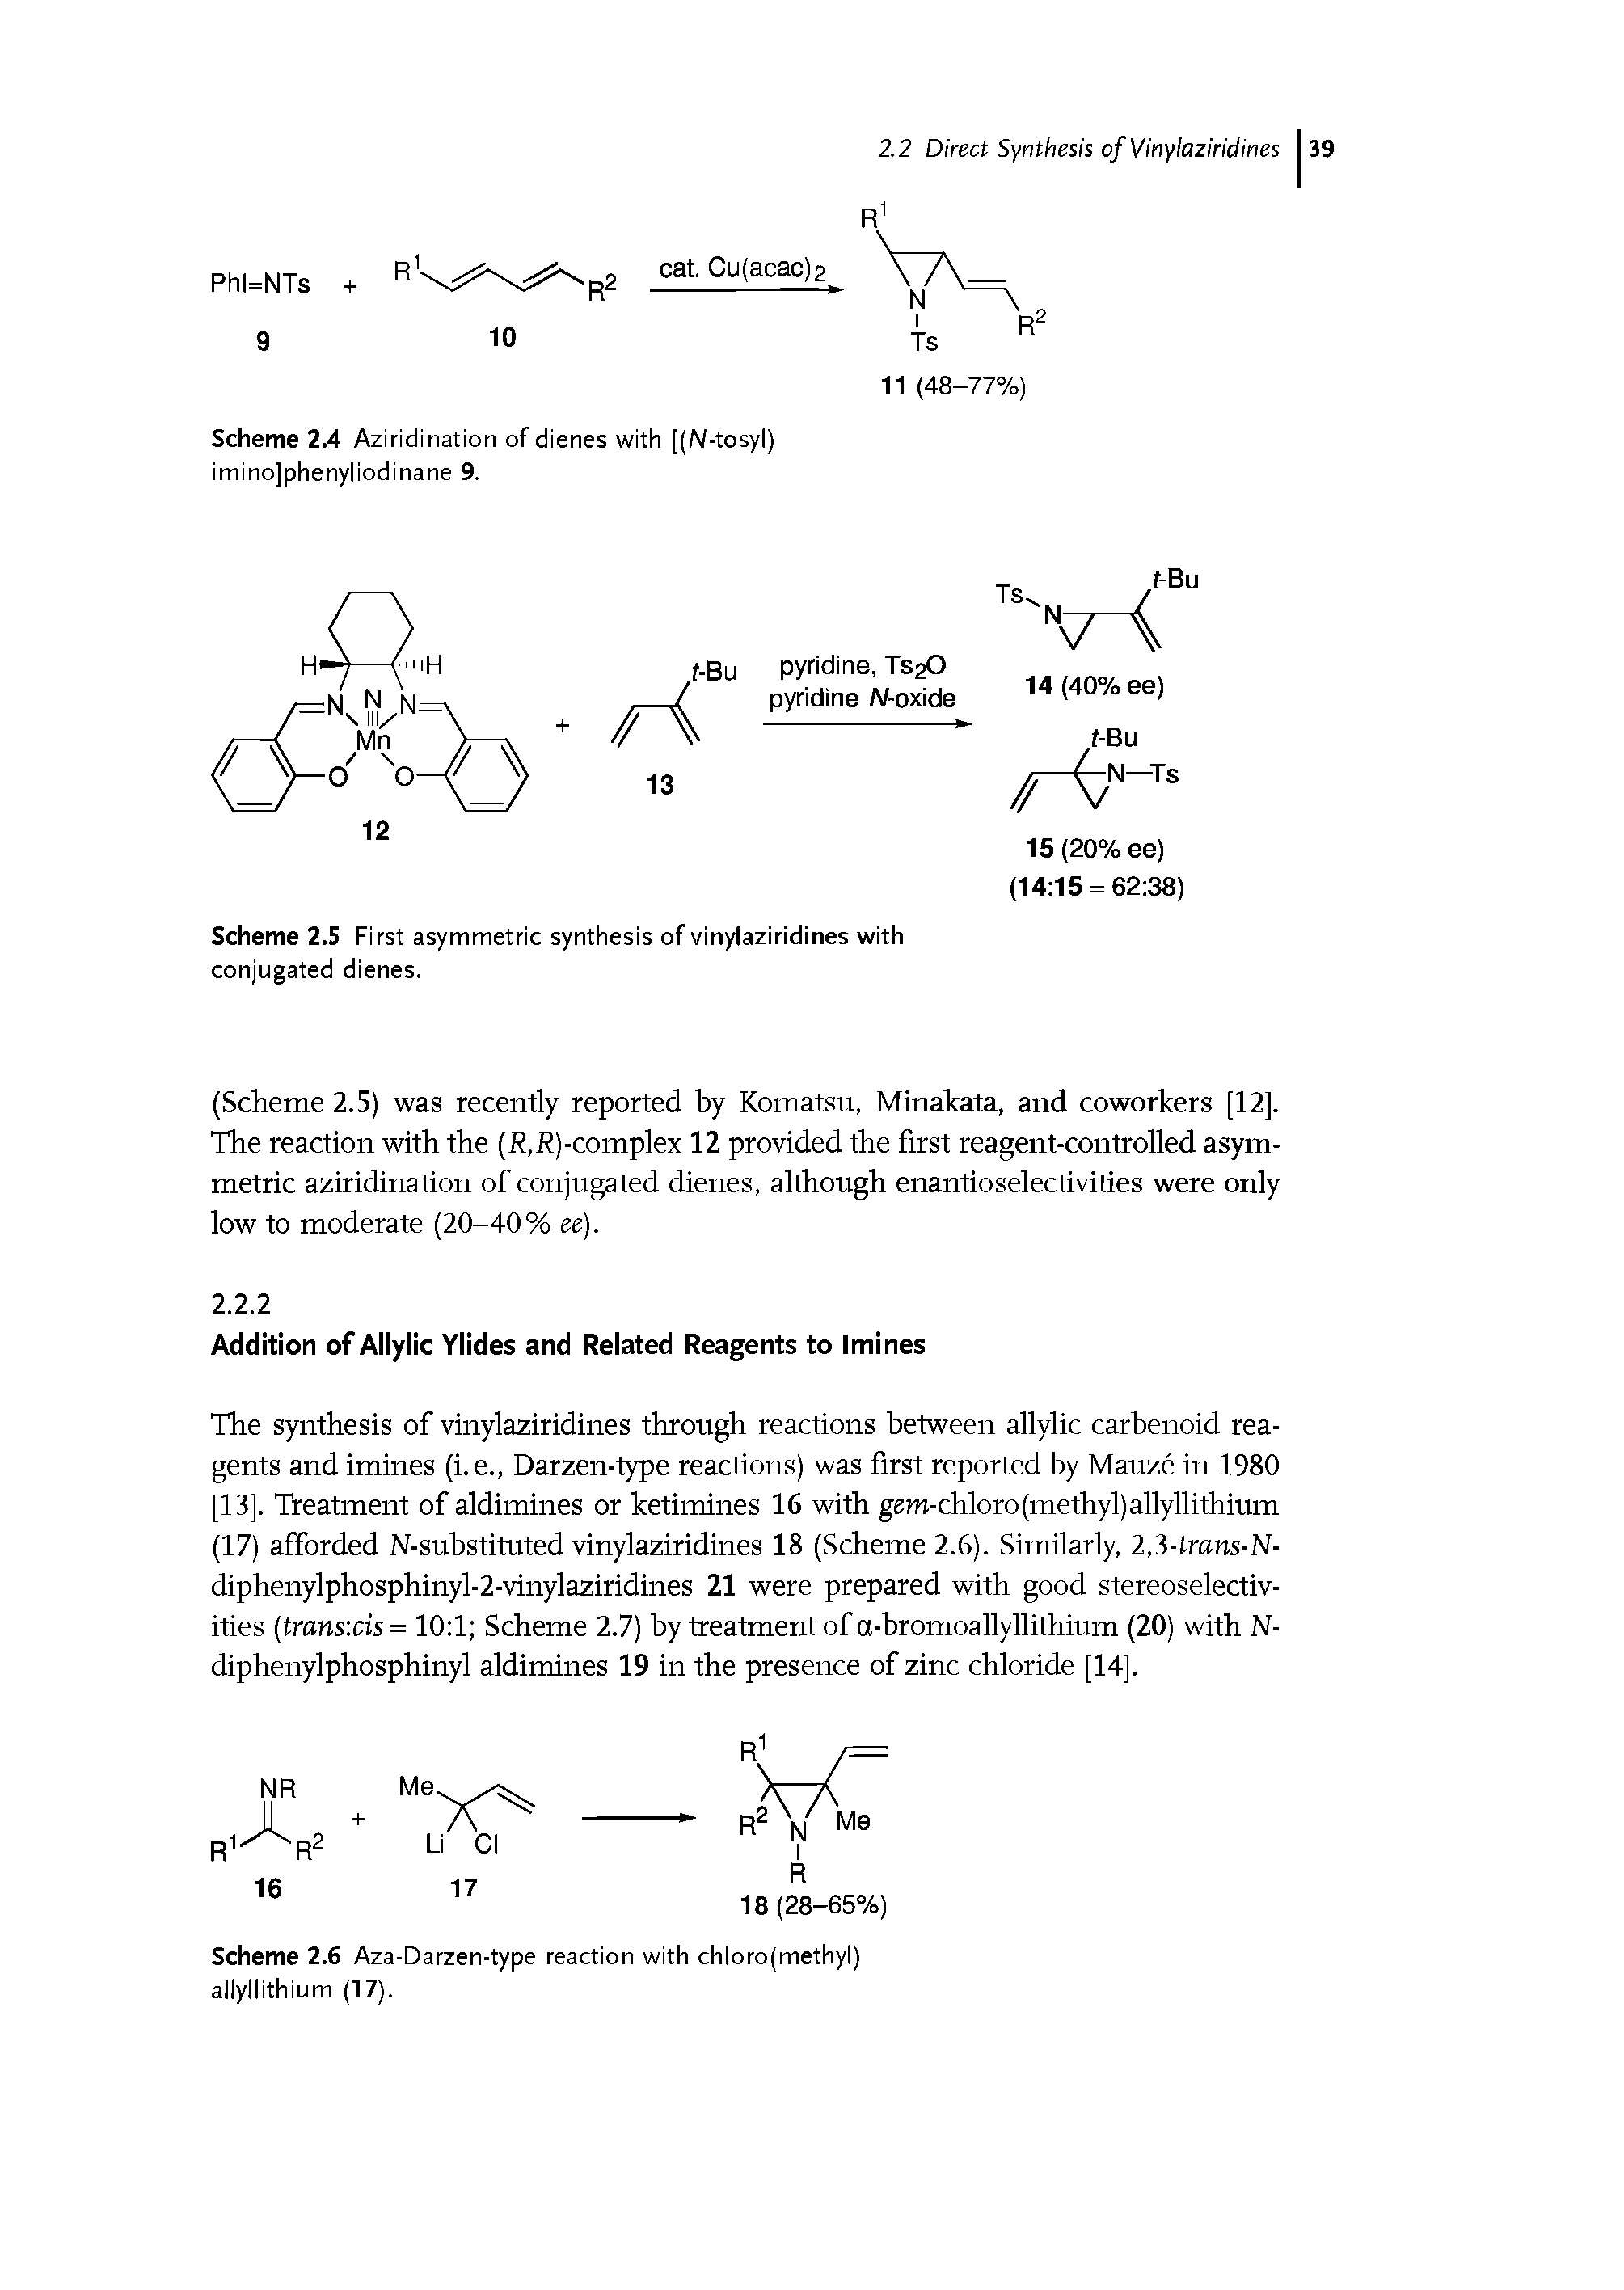 Scheme 2.6 Aza-Darzen-type reaction with chloro(methyl) allyllithium (17).